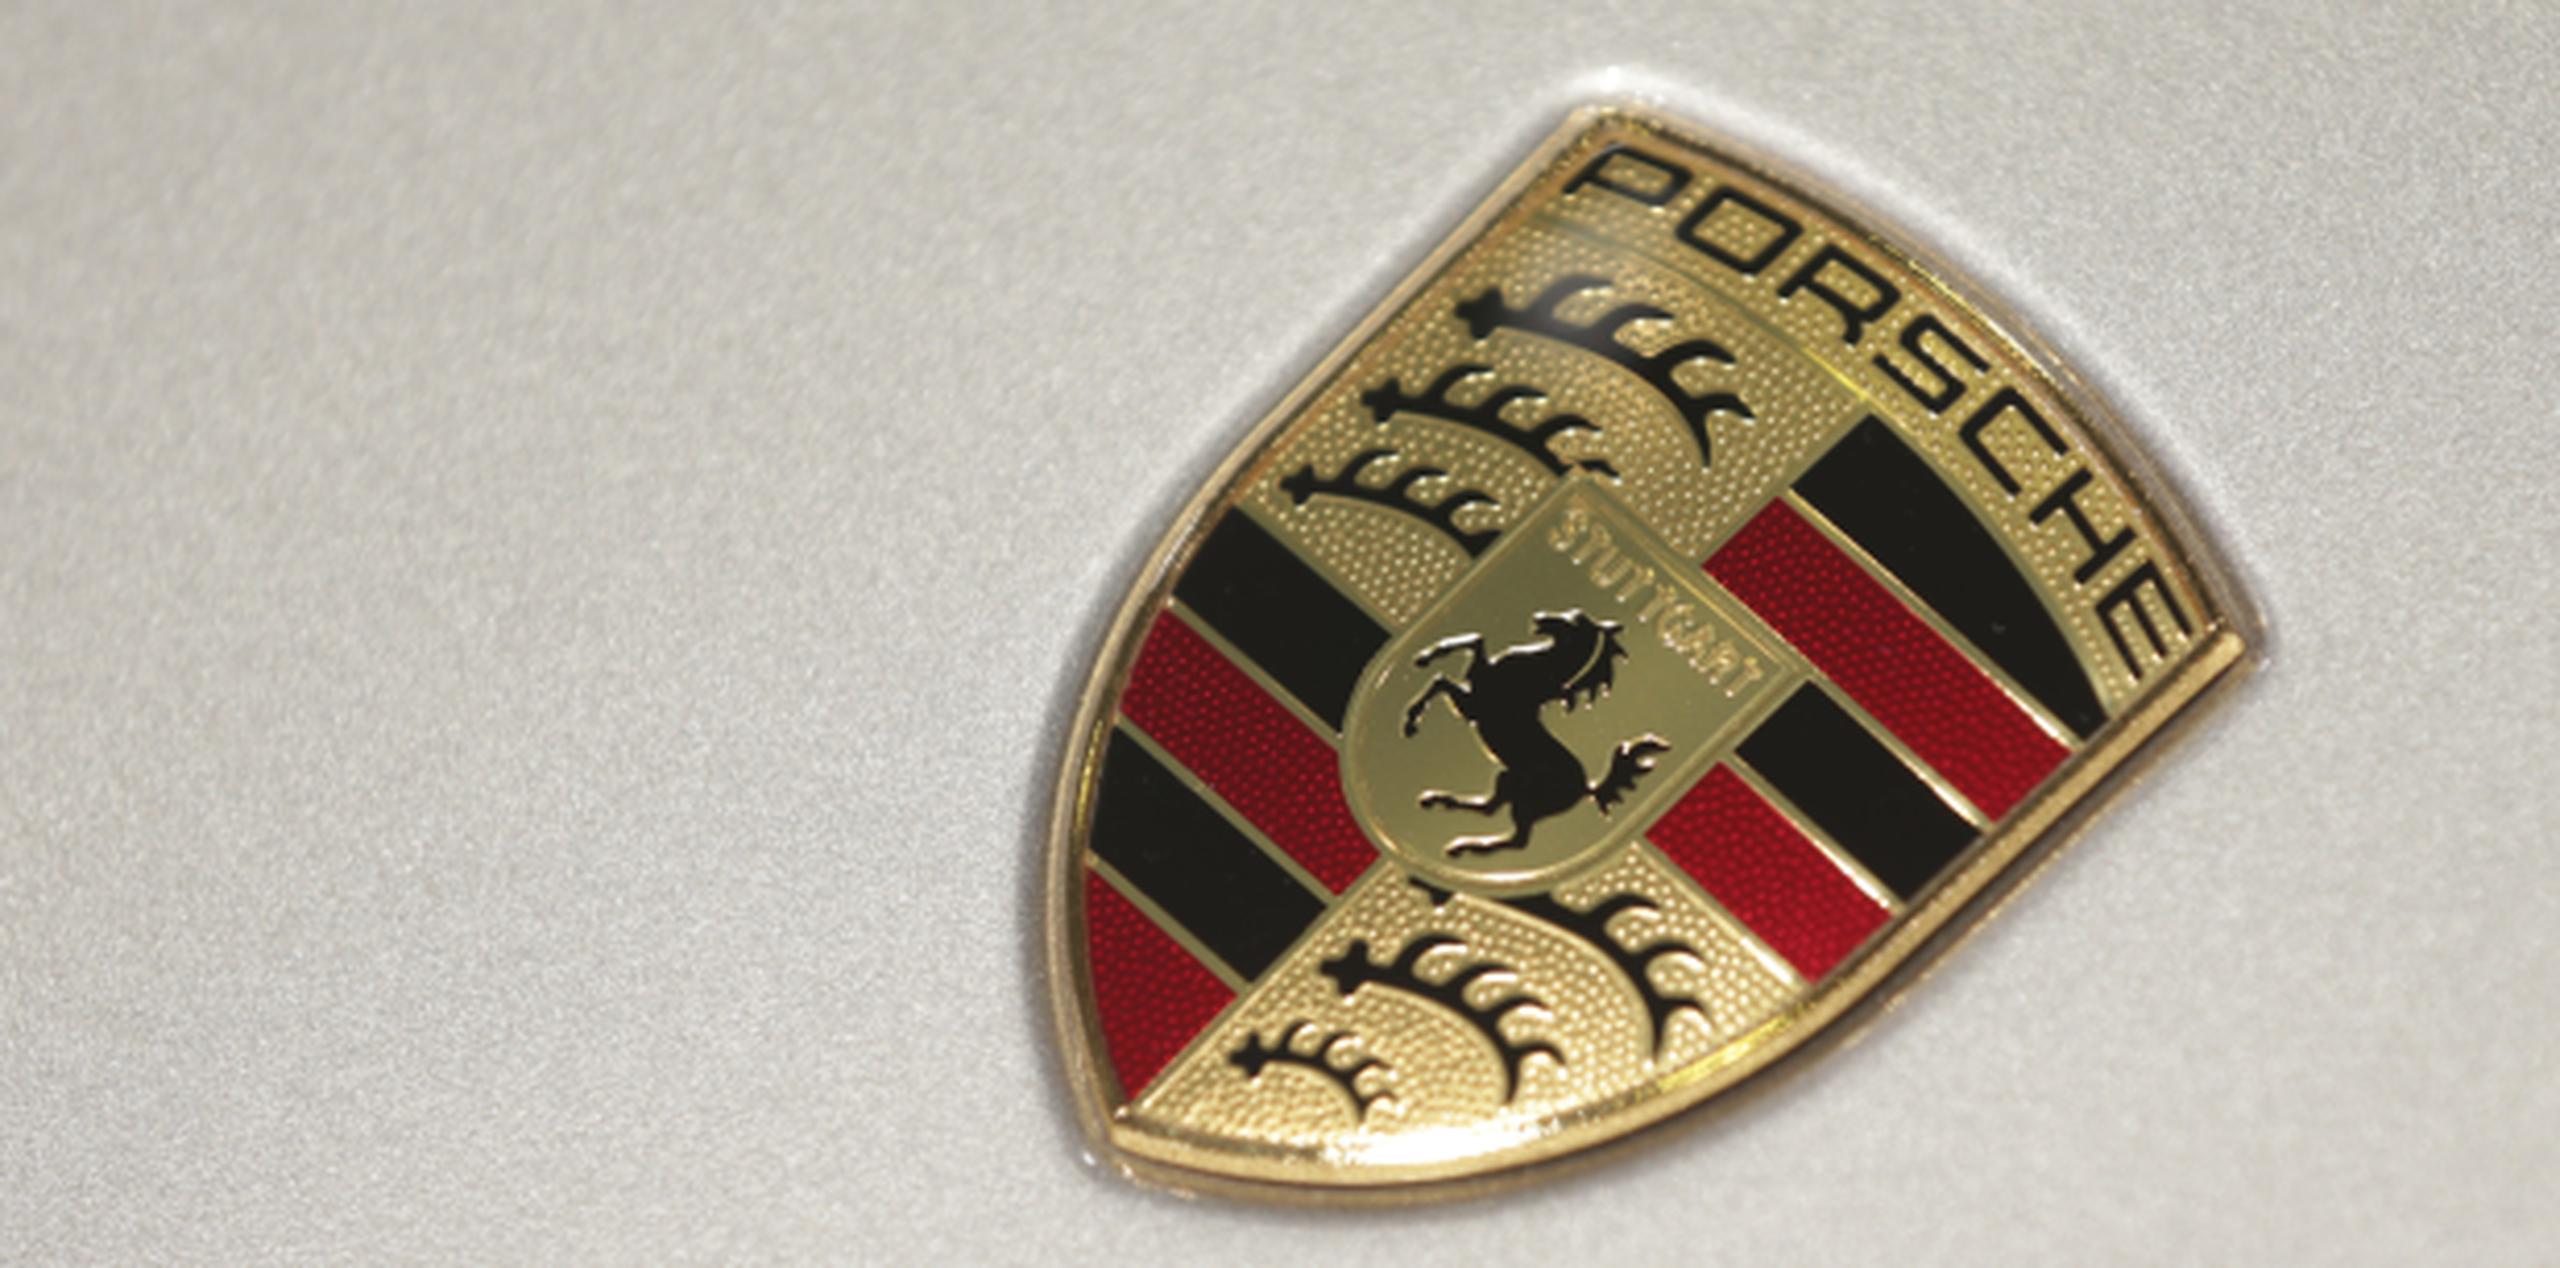 Los fiscales sospechan que se pudieron haber manipulado las emisiones en motores diesel de Porsche. (Archivo)